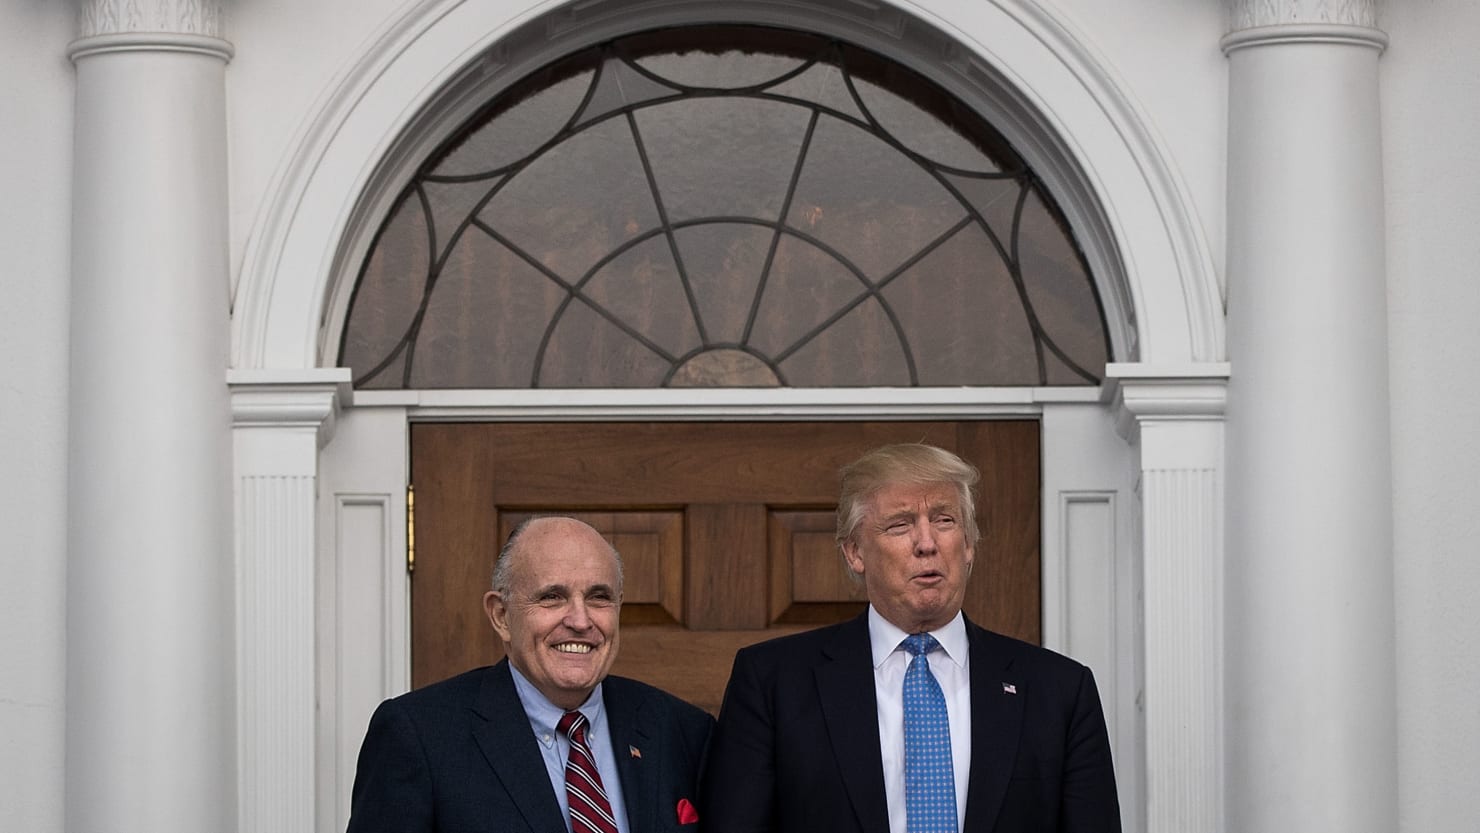 Trump torpédoval prosby Rudyho Giulianiho o pomoc v okruhu federalistov